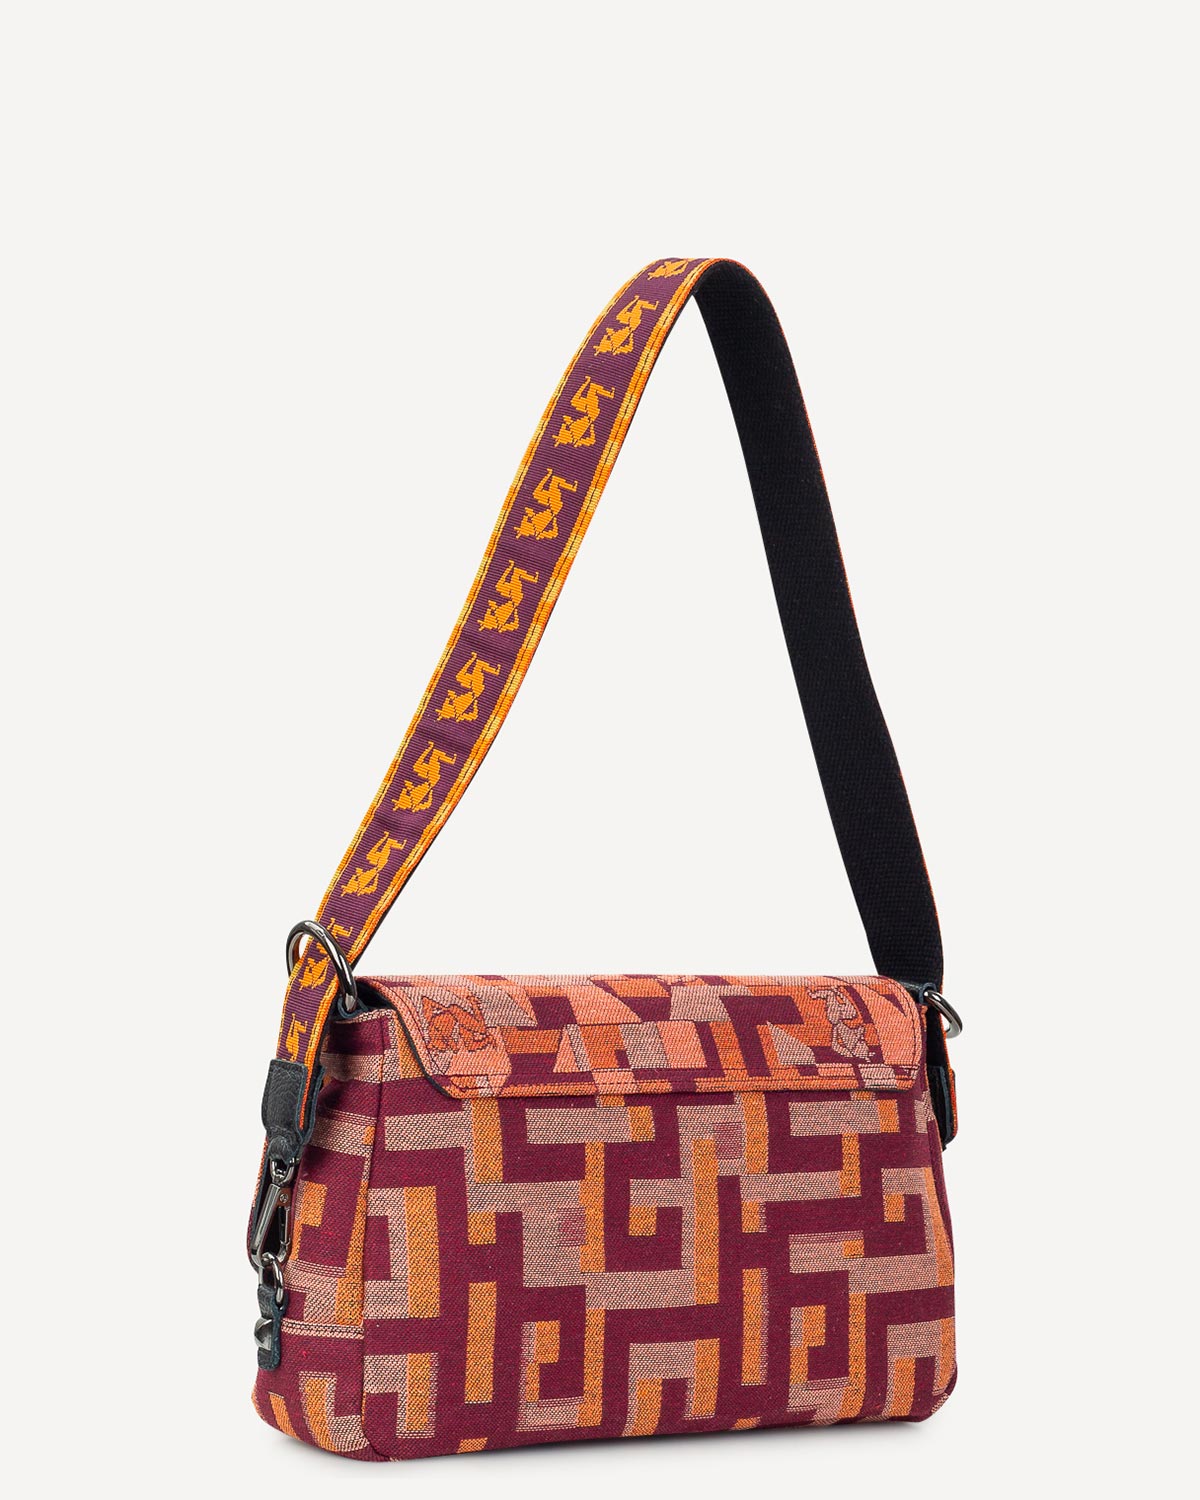 Γυναίκα - Shoulder Bags - Ames Bags Πορτοκαλί